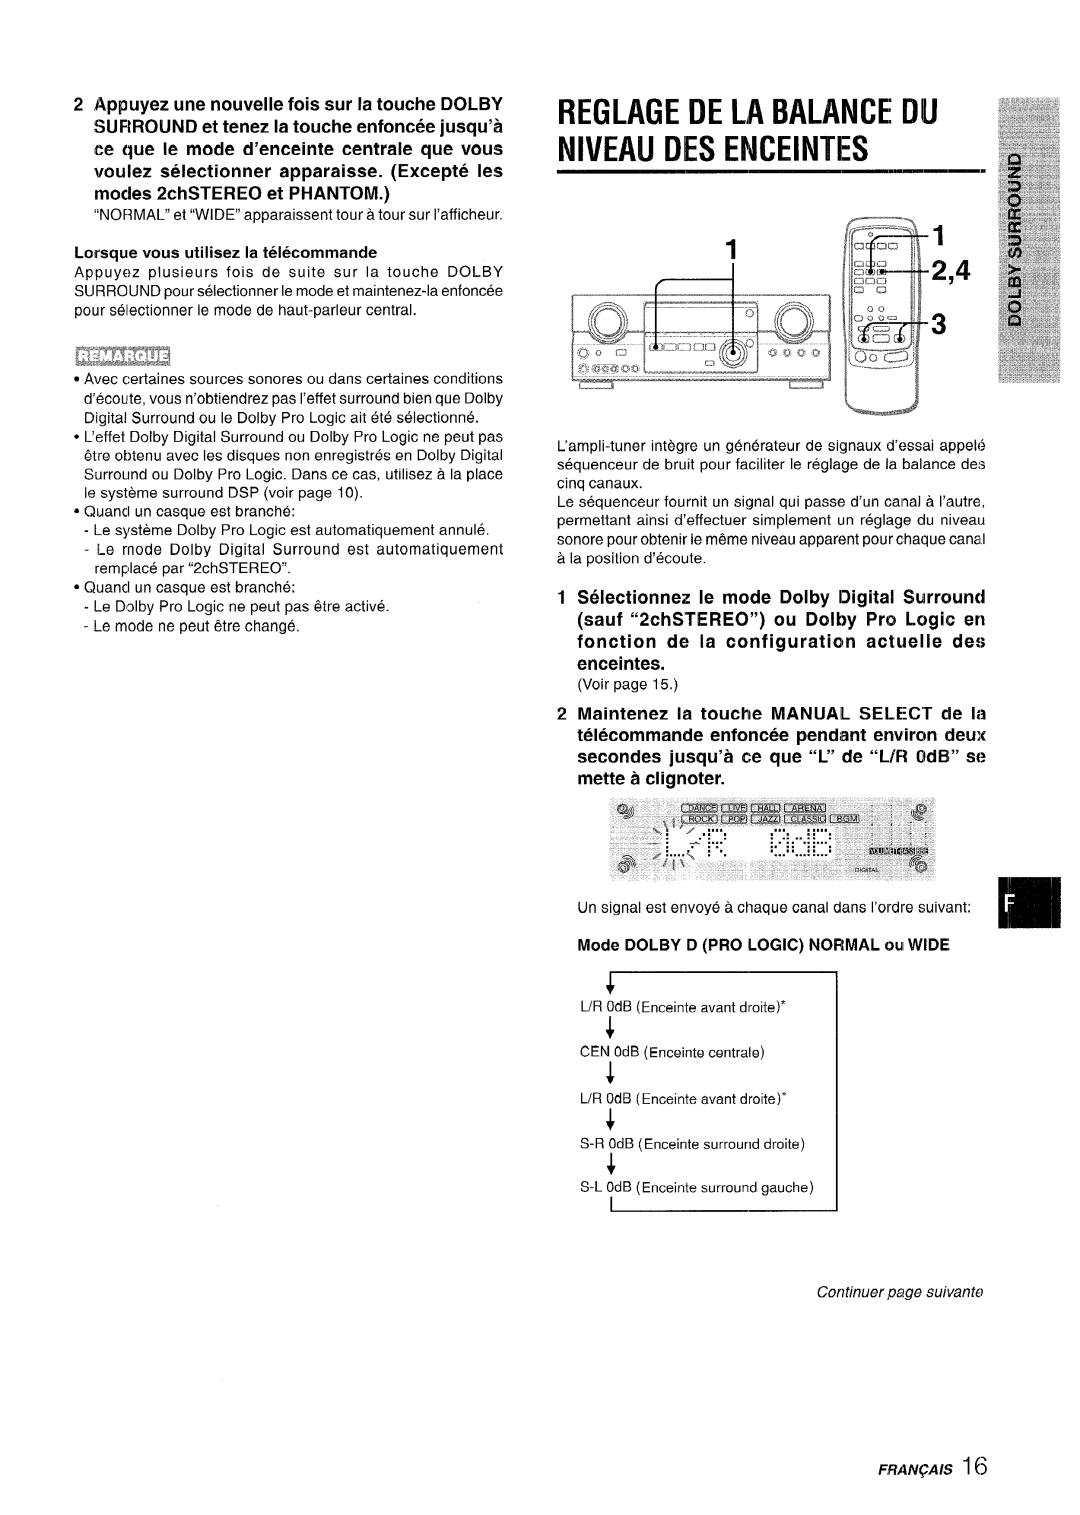 Sony AV-DV75 manual Reglage De La Balance Nj Niveau Des Enceintes, ee que Ie mode d’enceinte centrale que vous 